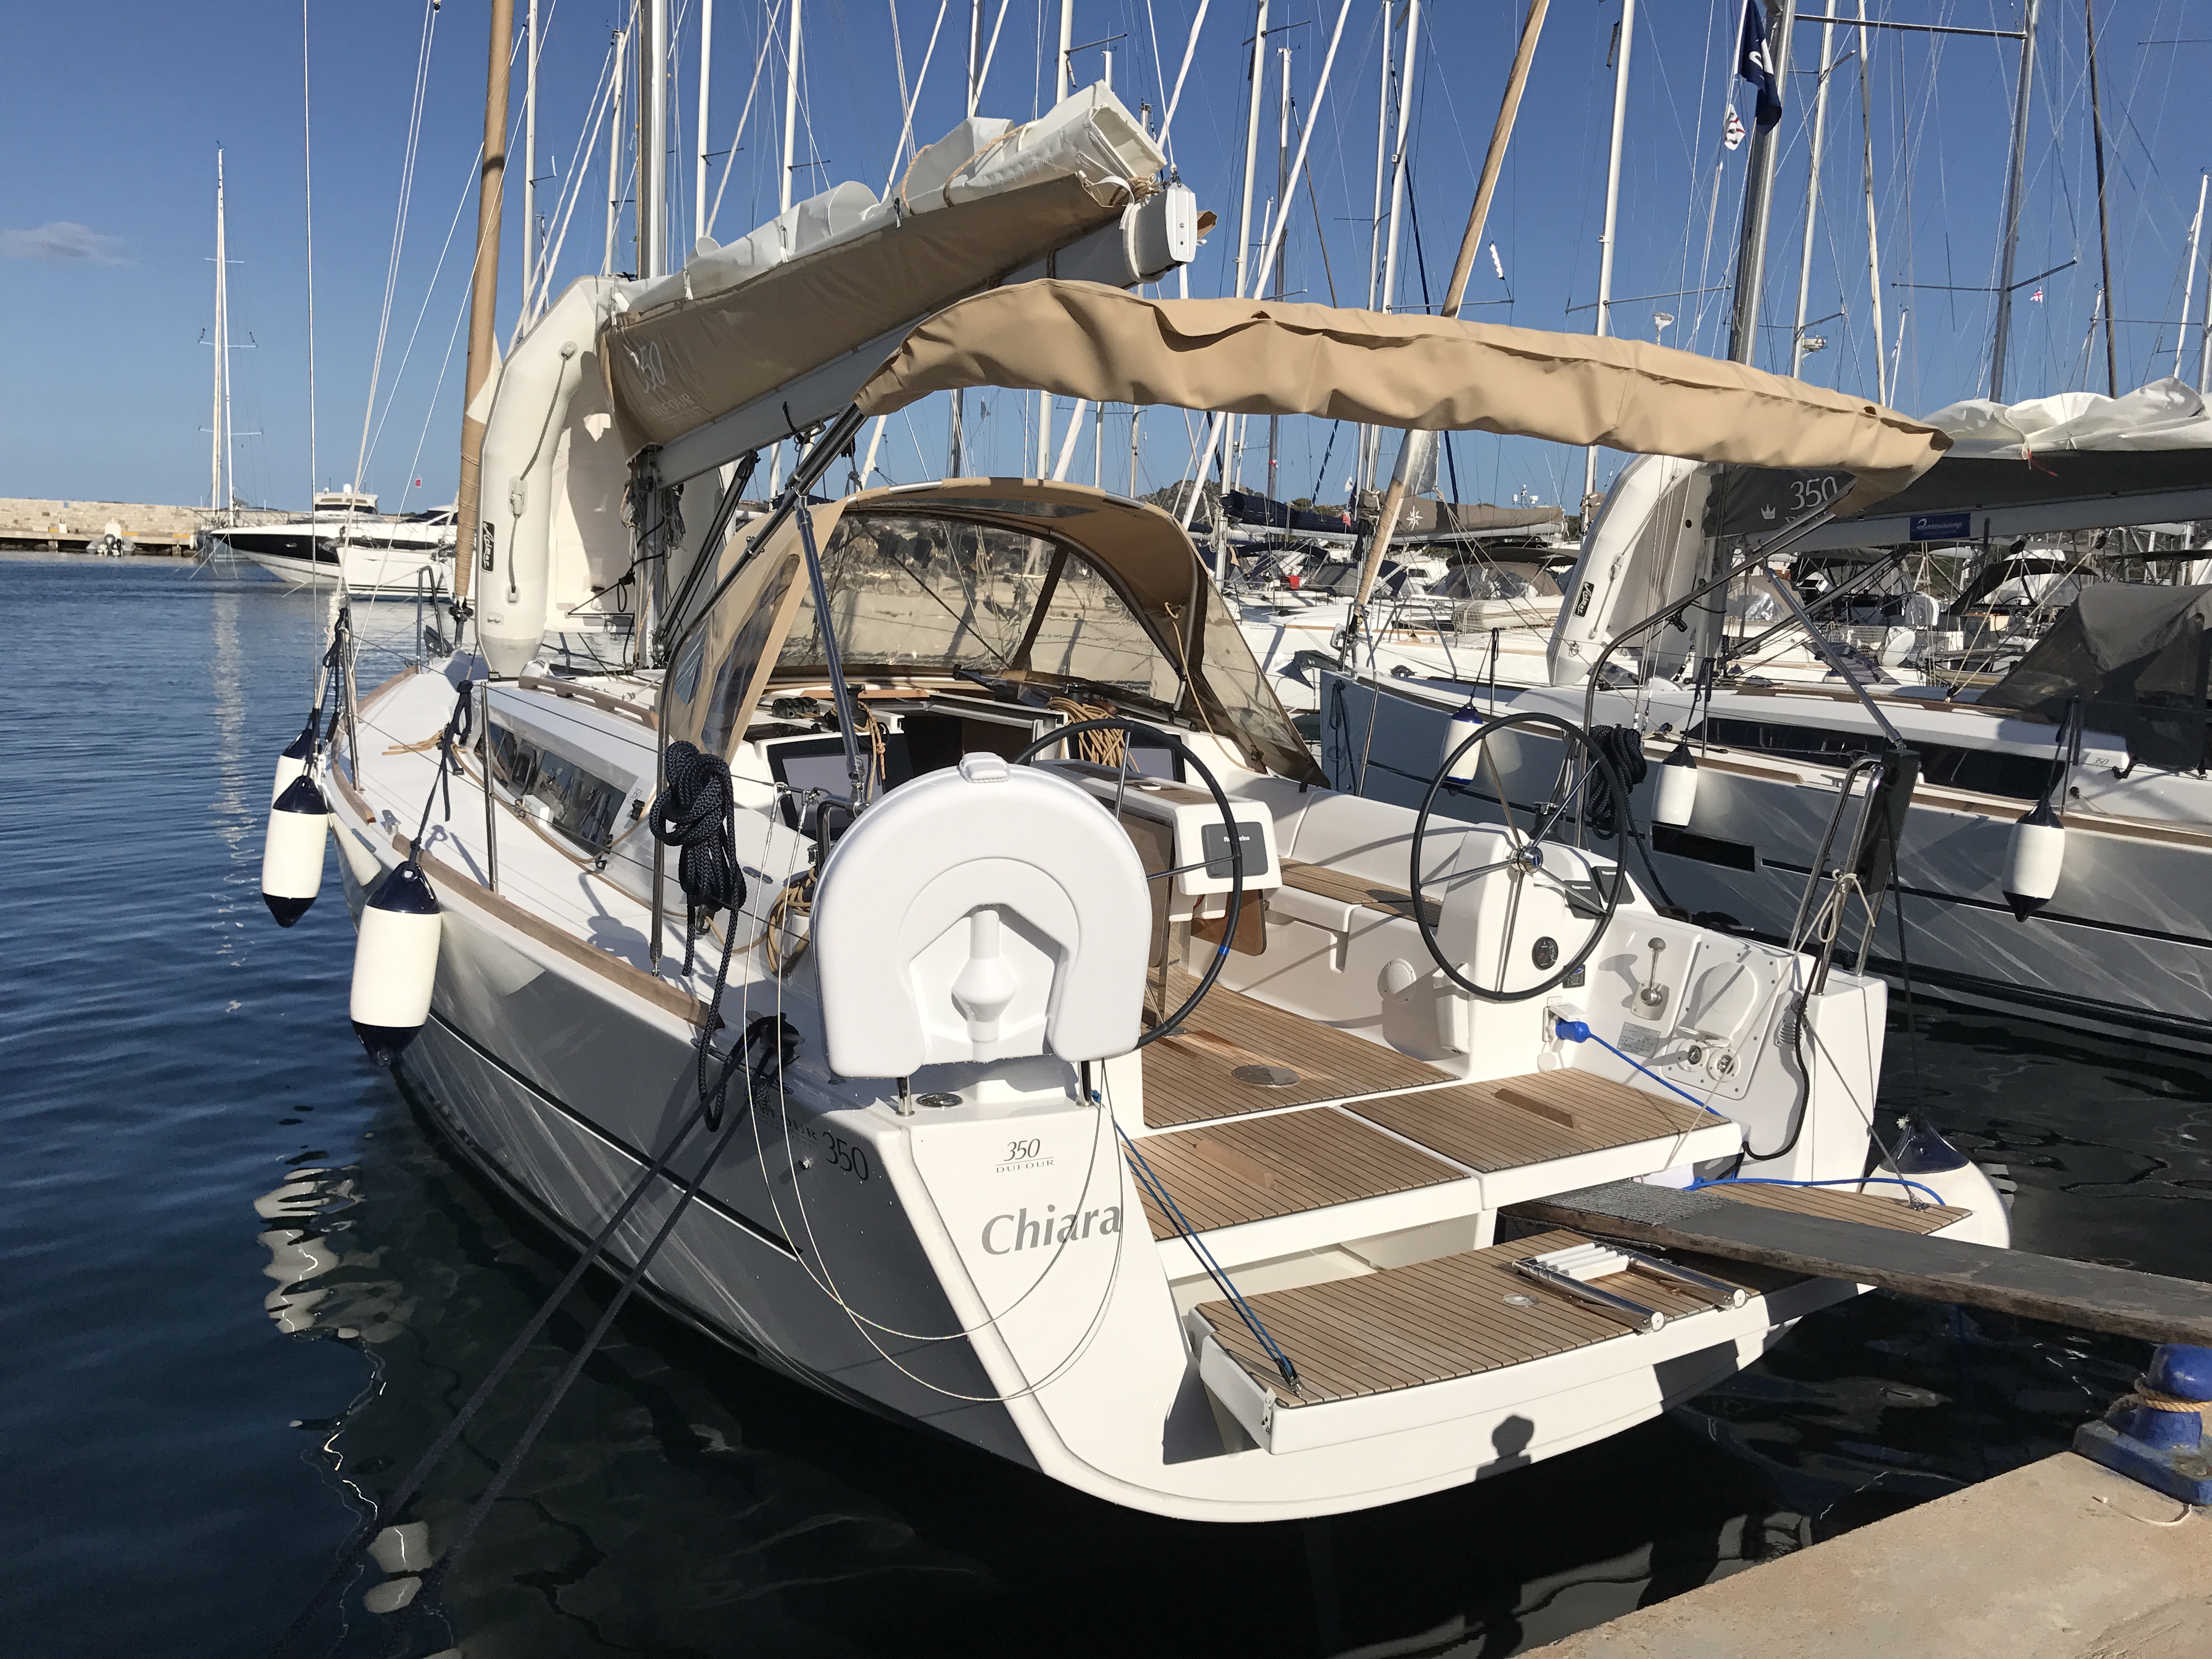 Dufour 350 Grand Large - Yacht Charter Portisco & Boat hire in Italy Sardinia Costa Smeralda Portisco Marina di Portisco 1